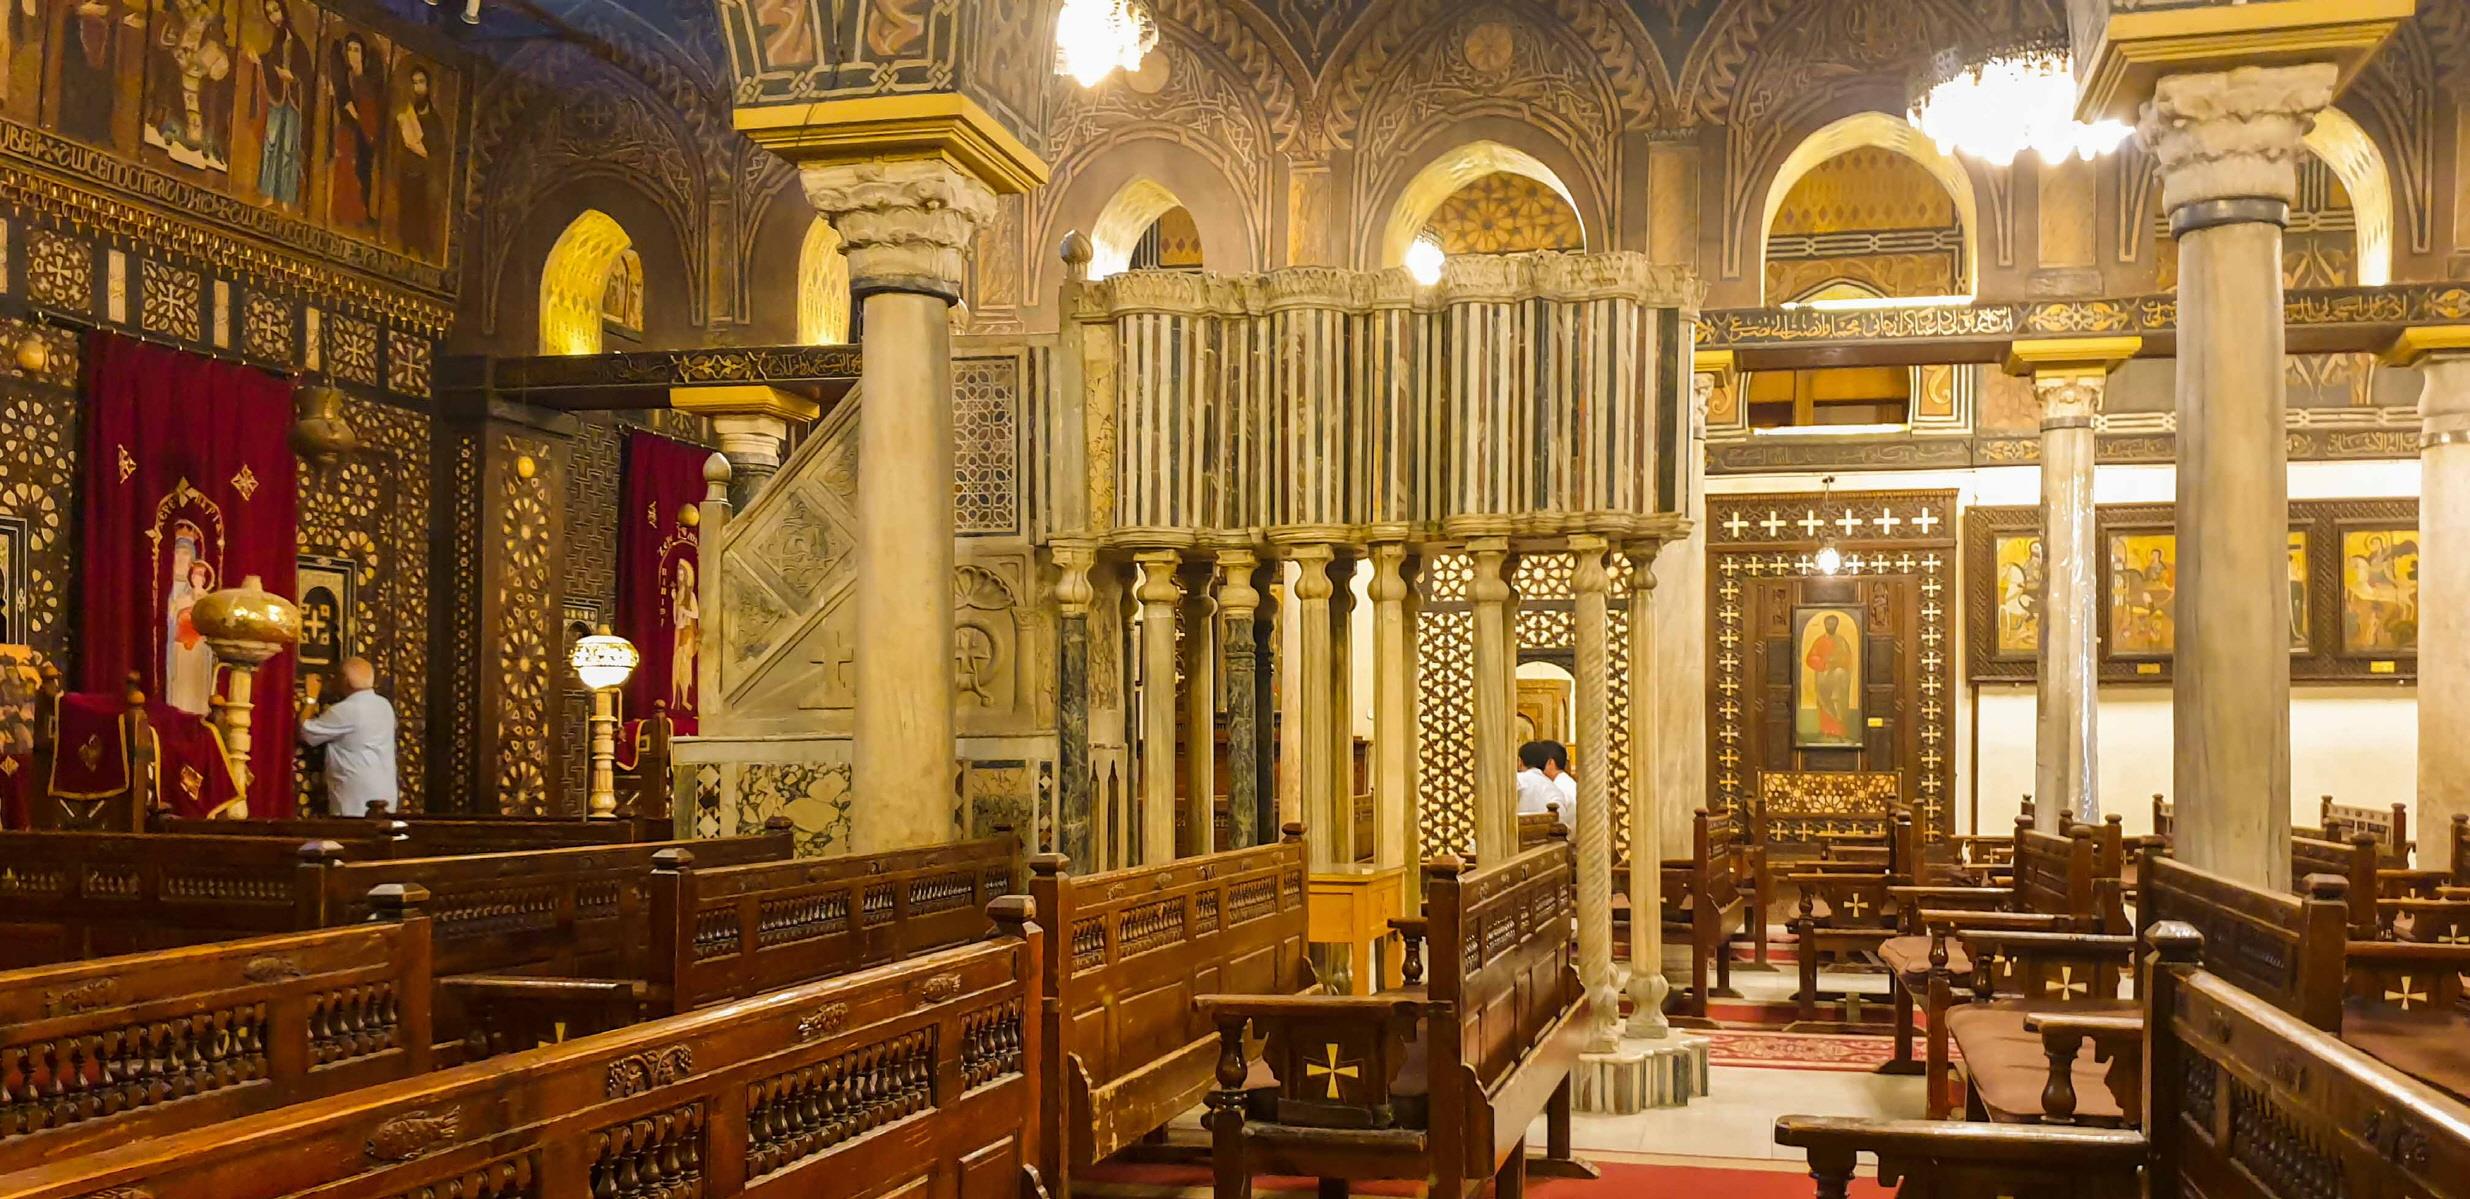 카이로 모세 기념교회  Synagogue Ben Ezra